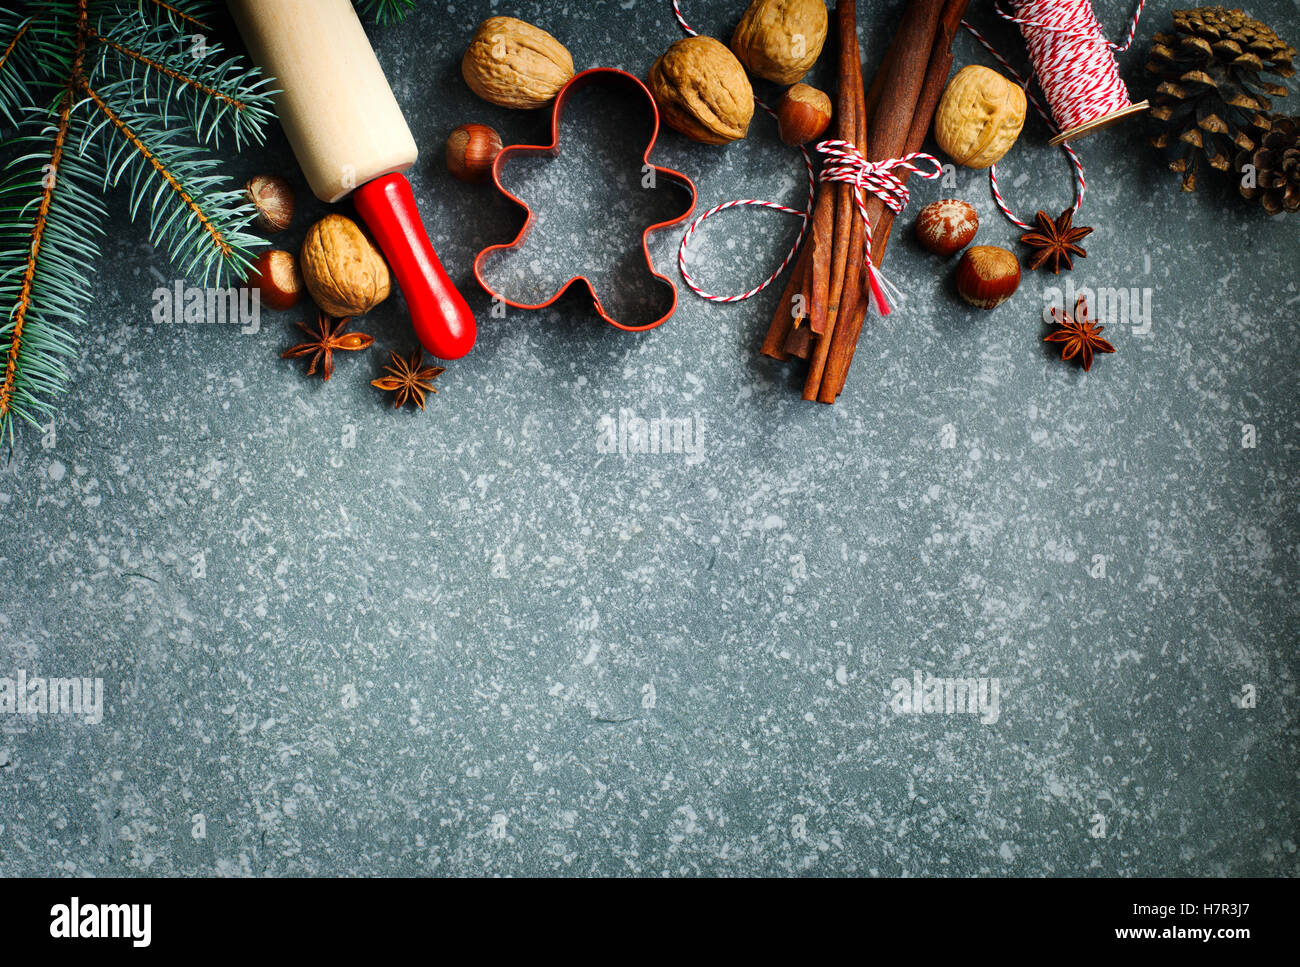 Ingrédients pour Noël cuisson fond sombre pour copier l'espace. Banque D'Images